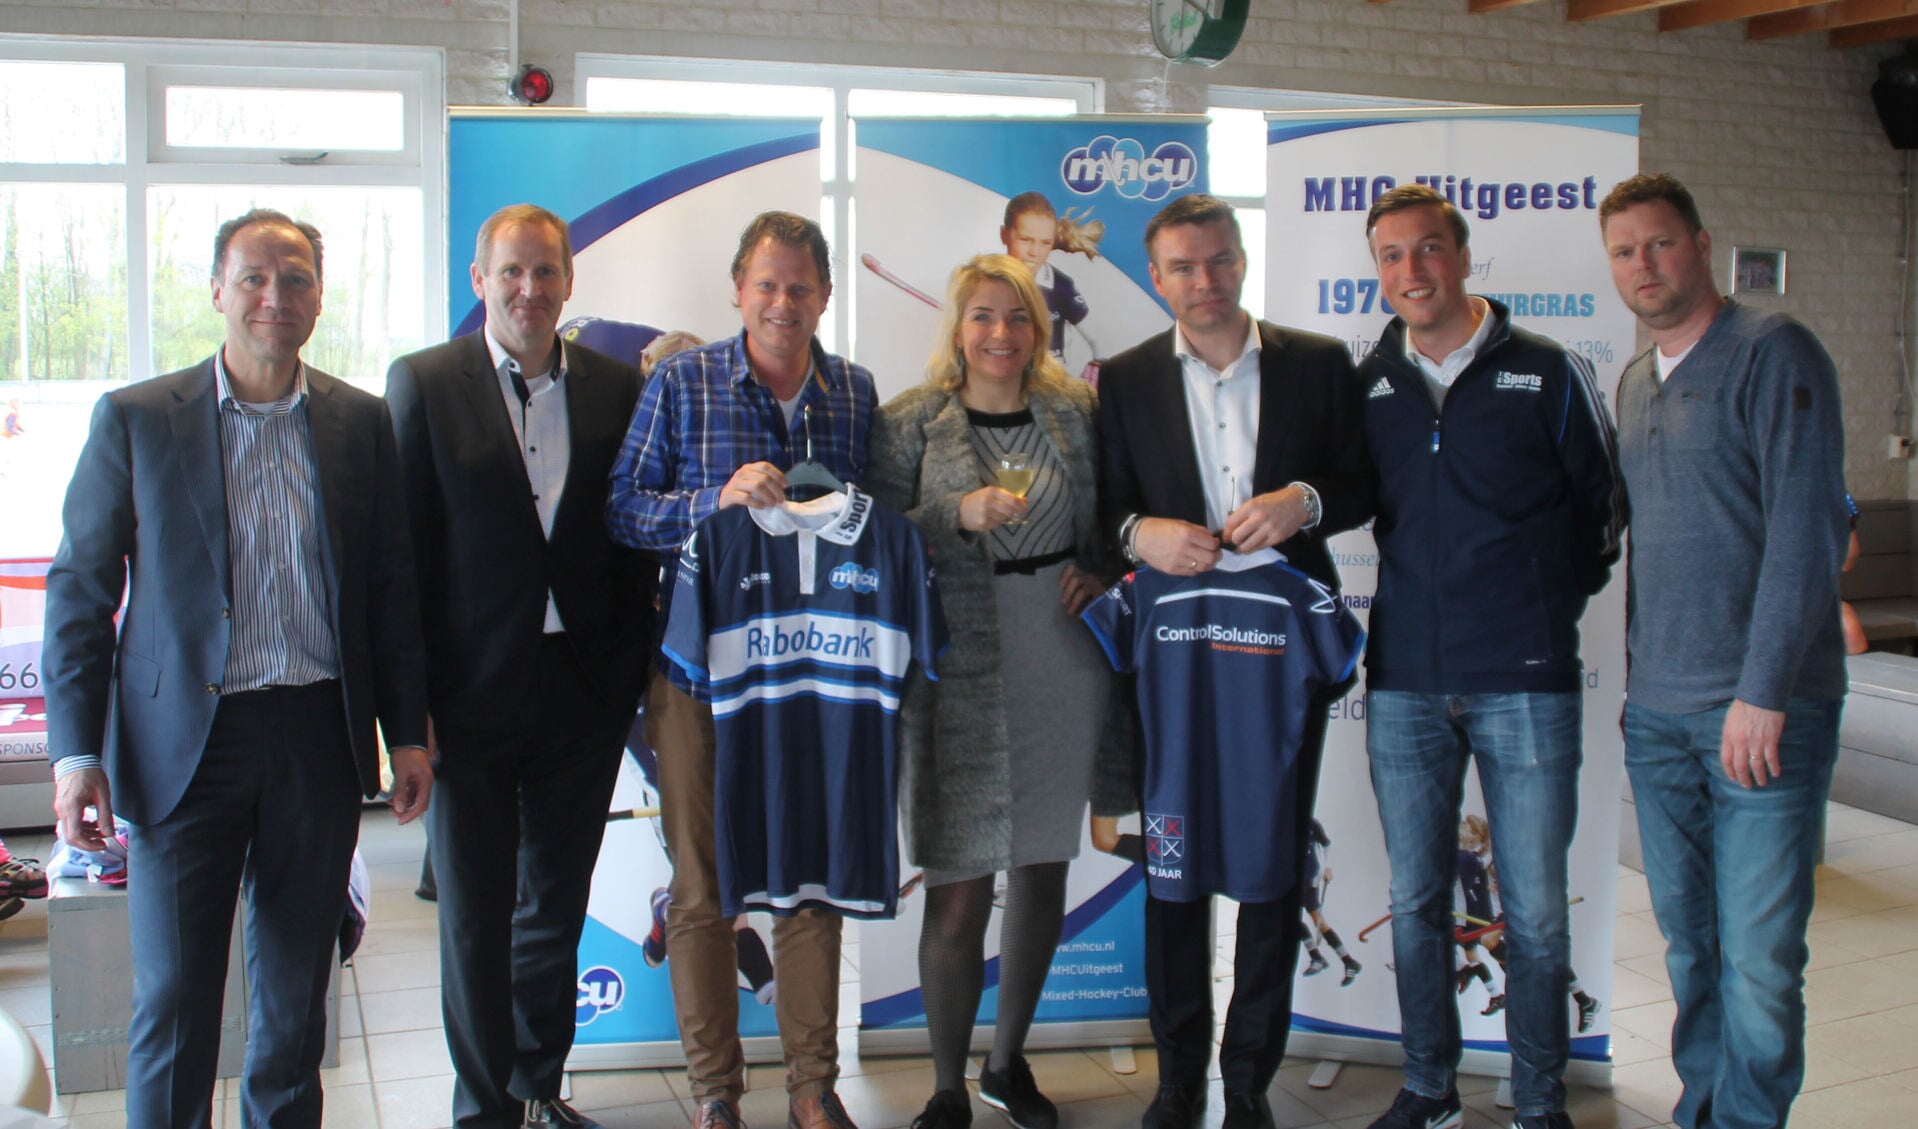 De vijf sponsors geflankeerd door voorzitter Jaap Bos en penningmeester Ronald van Dijck.